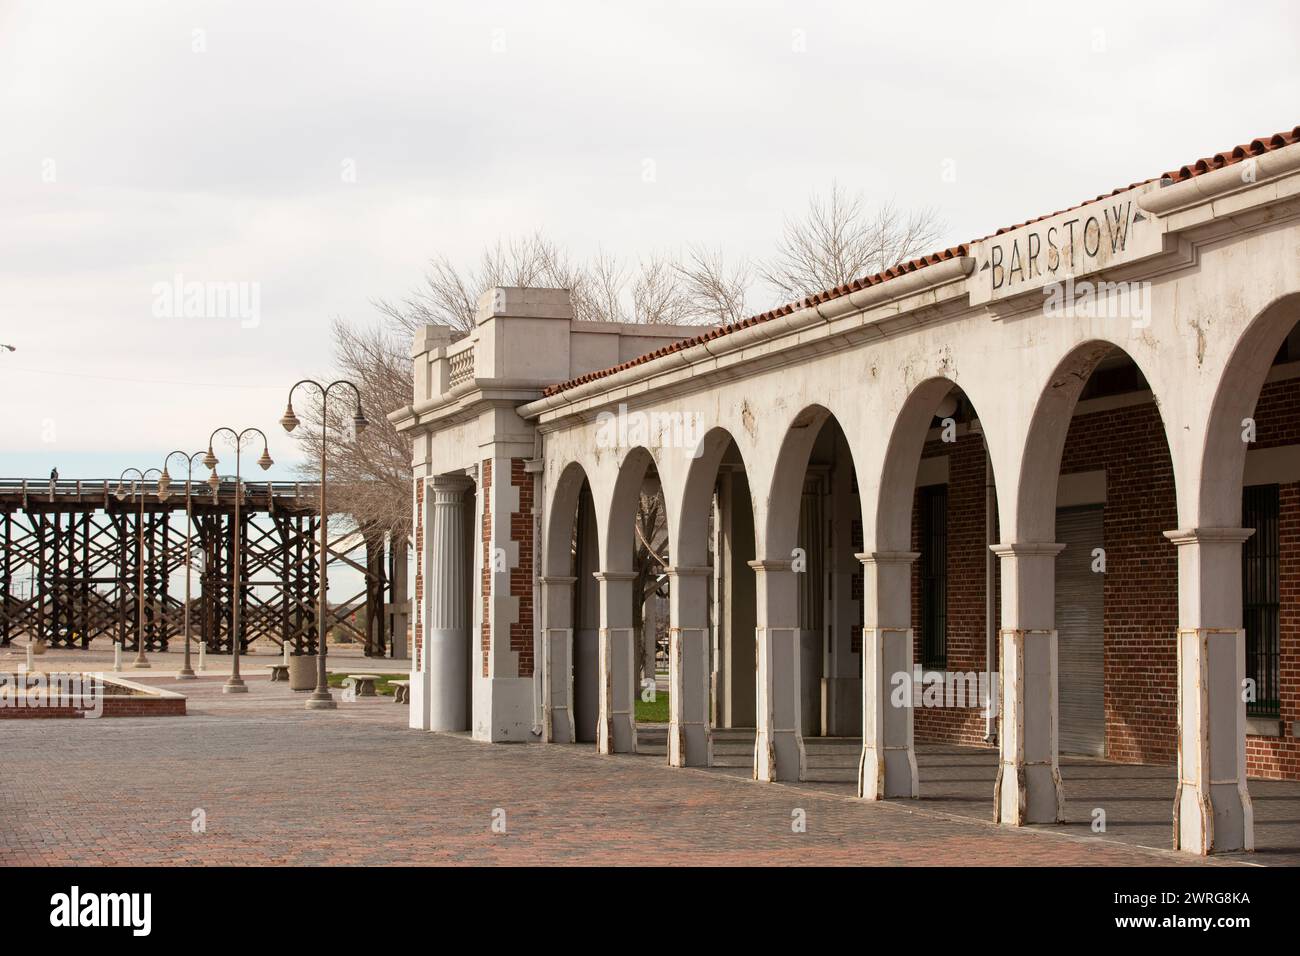 Barstow, Kalifornien, USA - 20. Juni 2020: Die Nachmittagssonne scheint auf dem historischen Bahnhof Casa Del Desierto, einem Bahnhof von Harvey House. Stockfoto